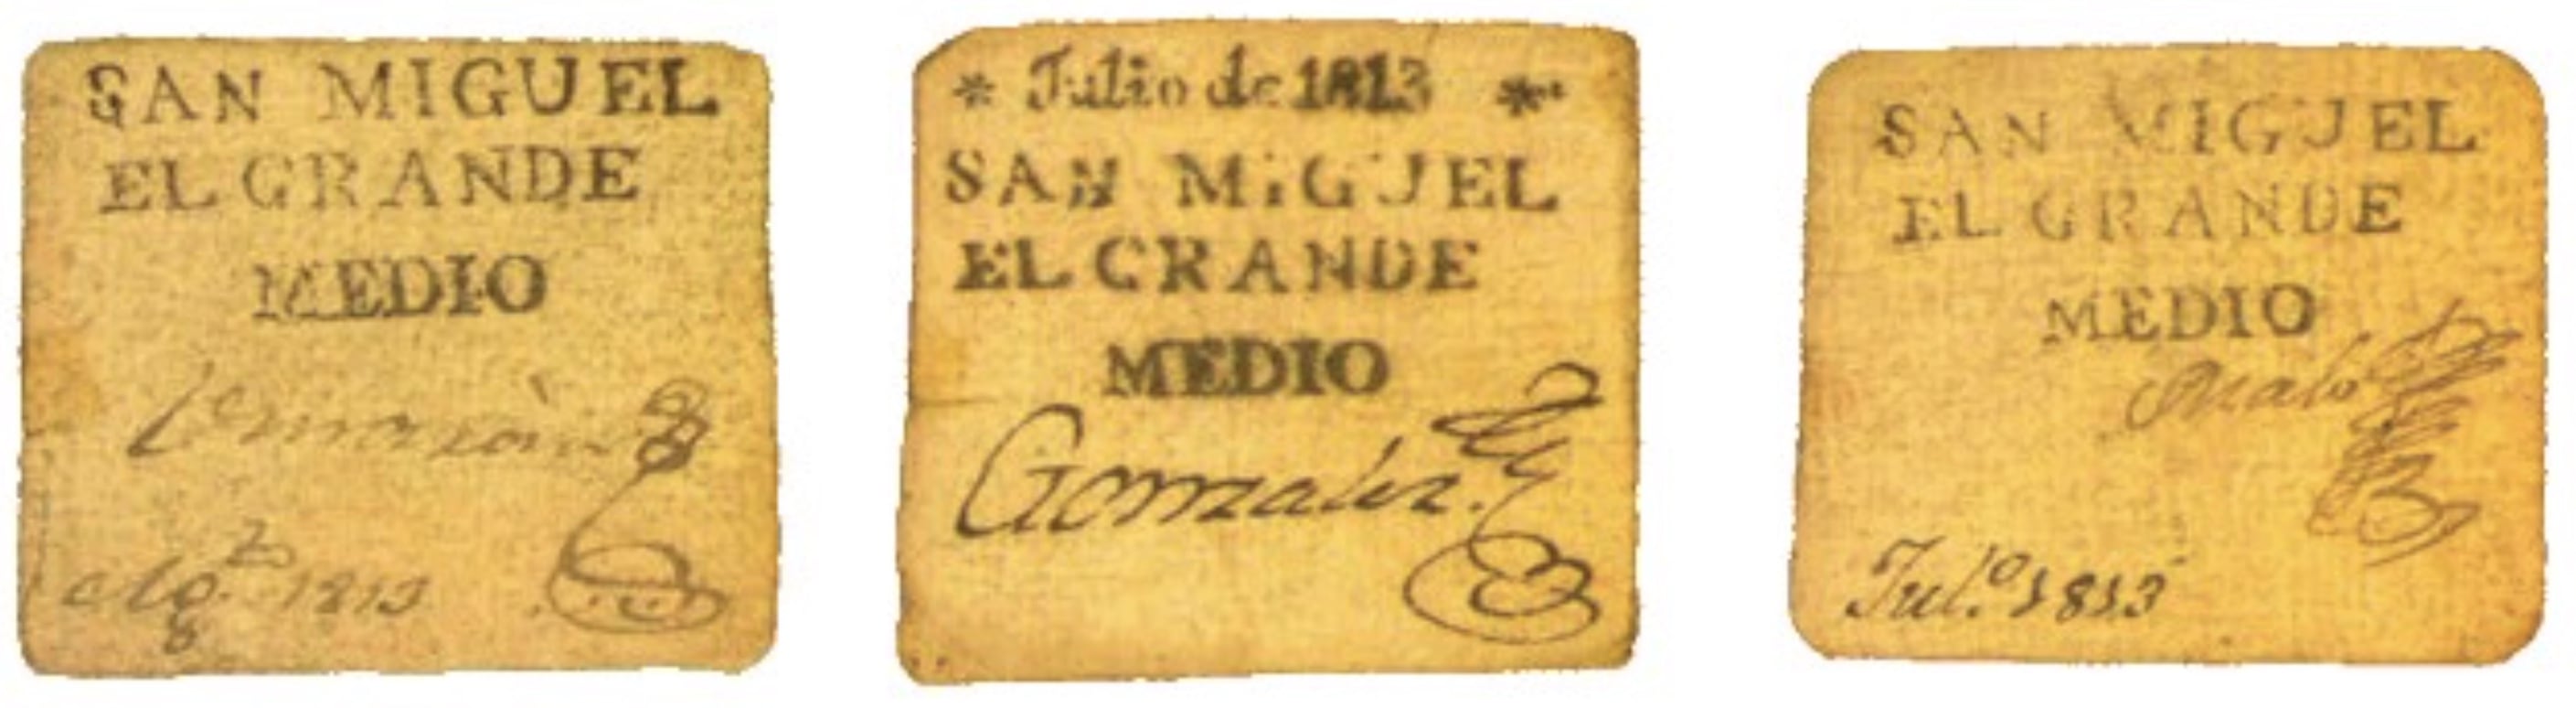 Medio real de cartón de San Miguel El Grande. (numistas.com)